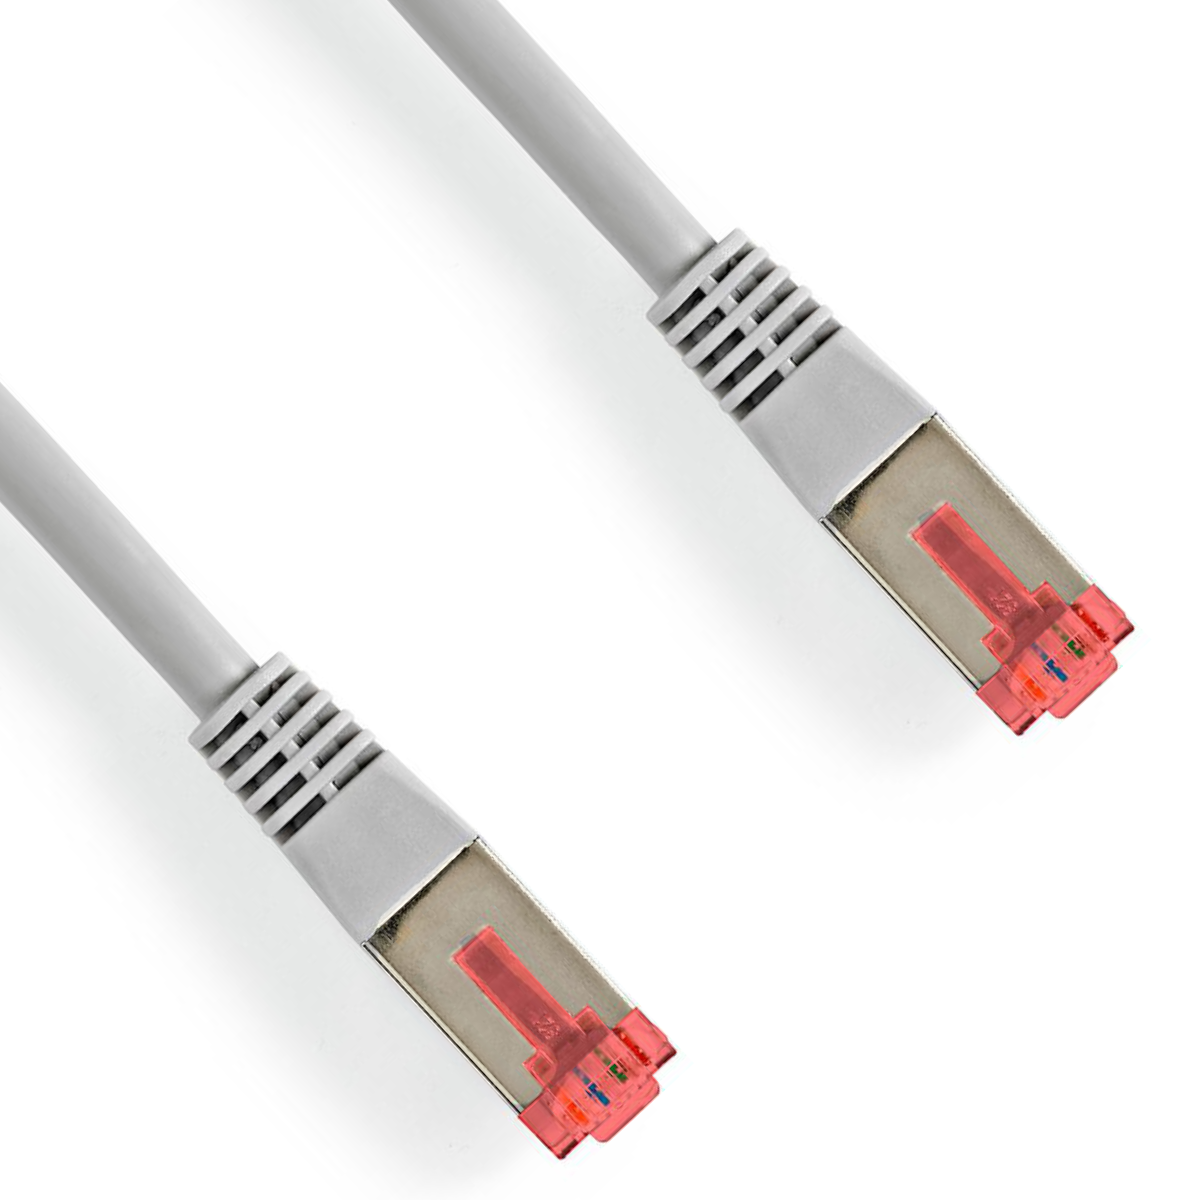 S/FTP kabel - 1 meter - Grijs - Nedis